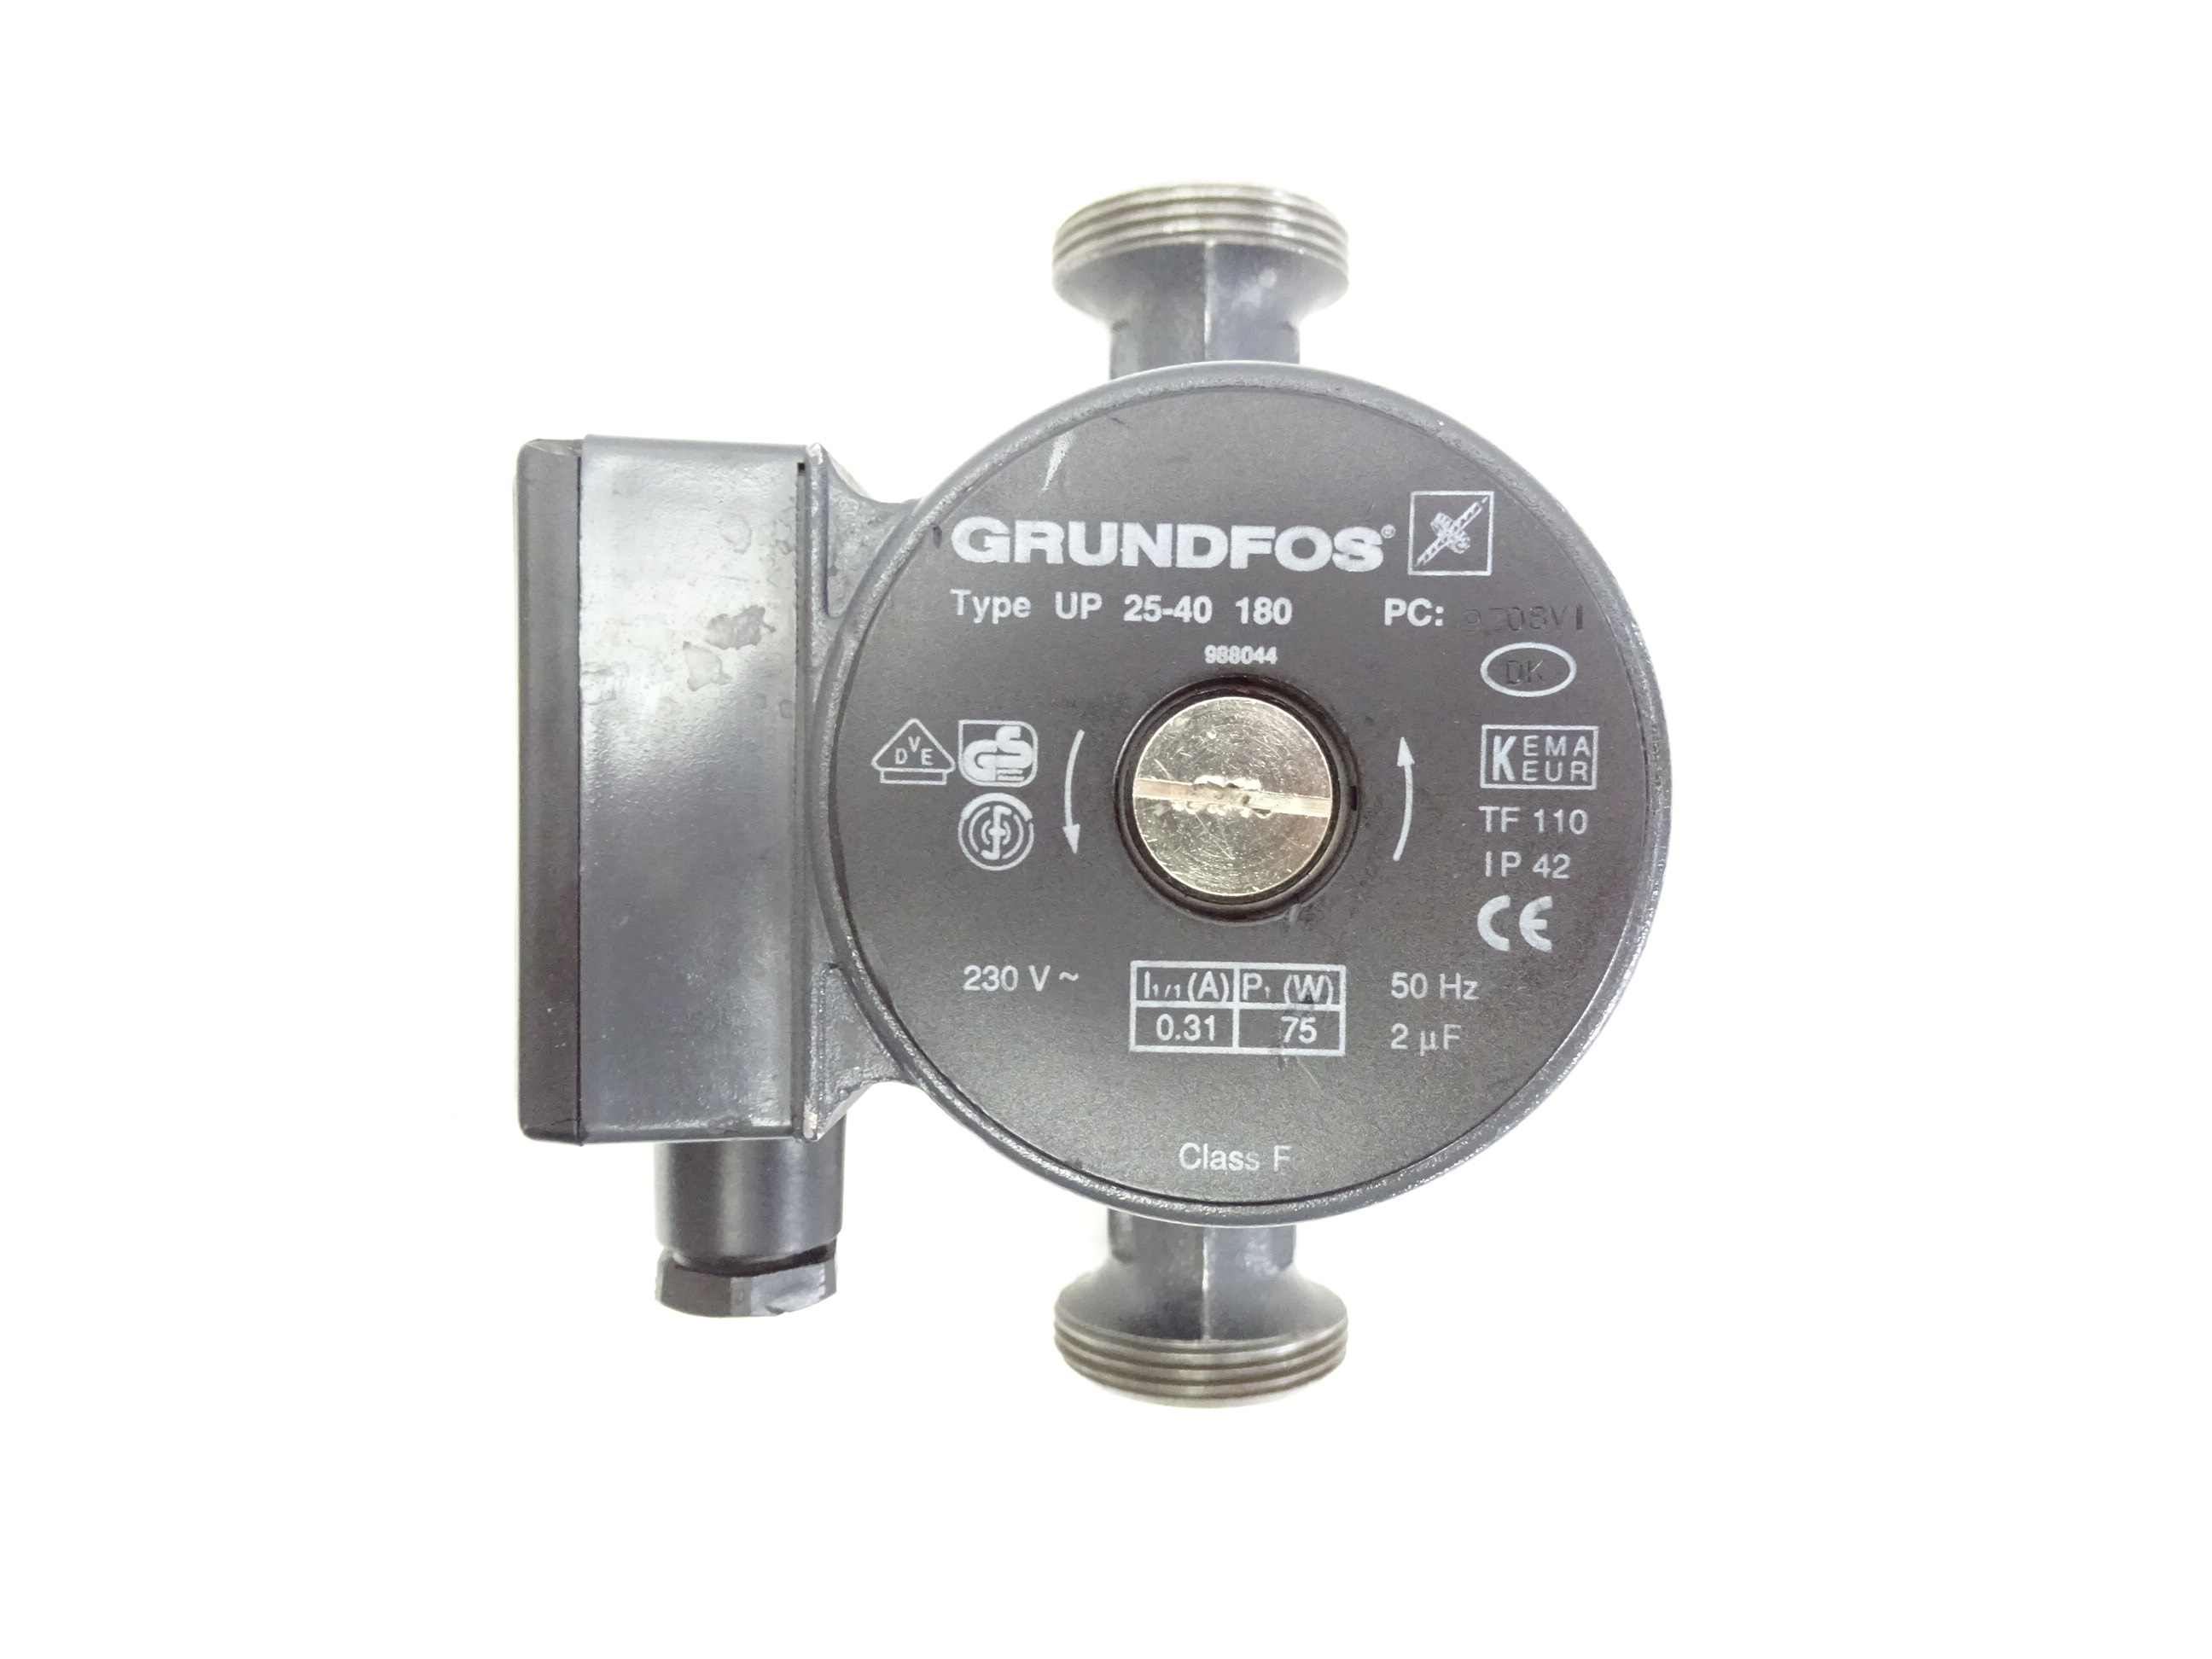 Grundfos UP 25-40 180mm Umwälz-Pumpe Heizungspumpe - 988044